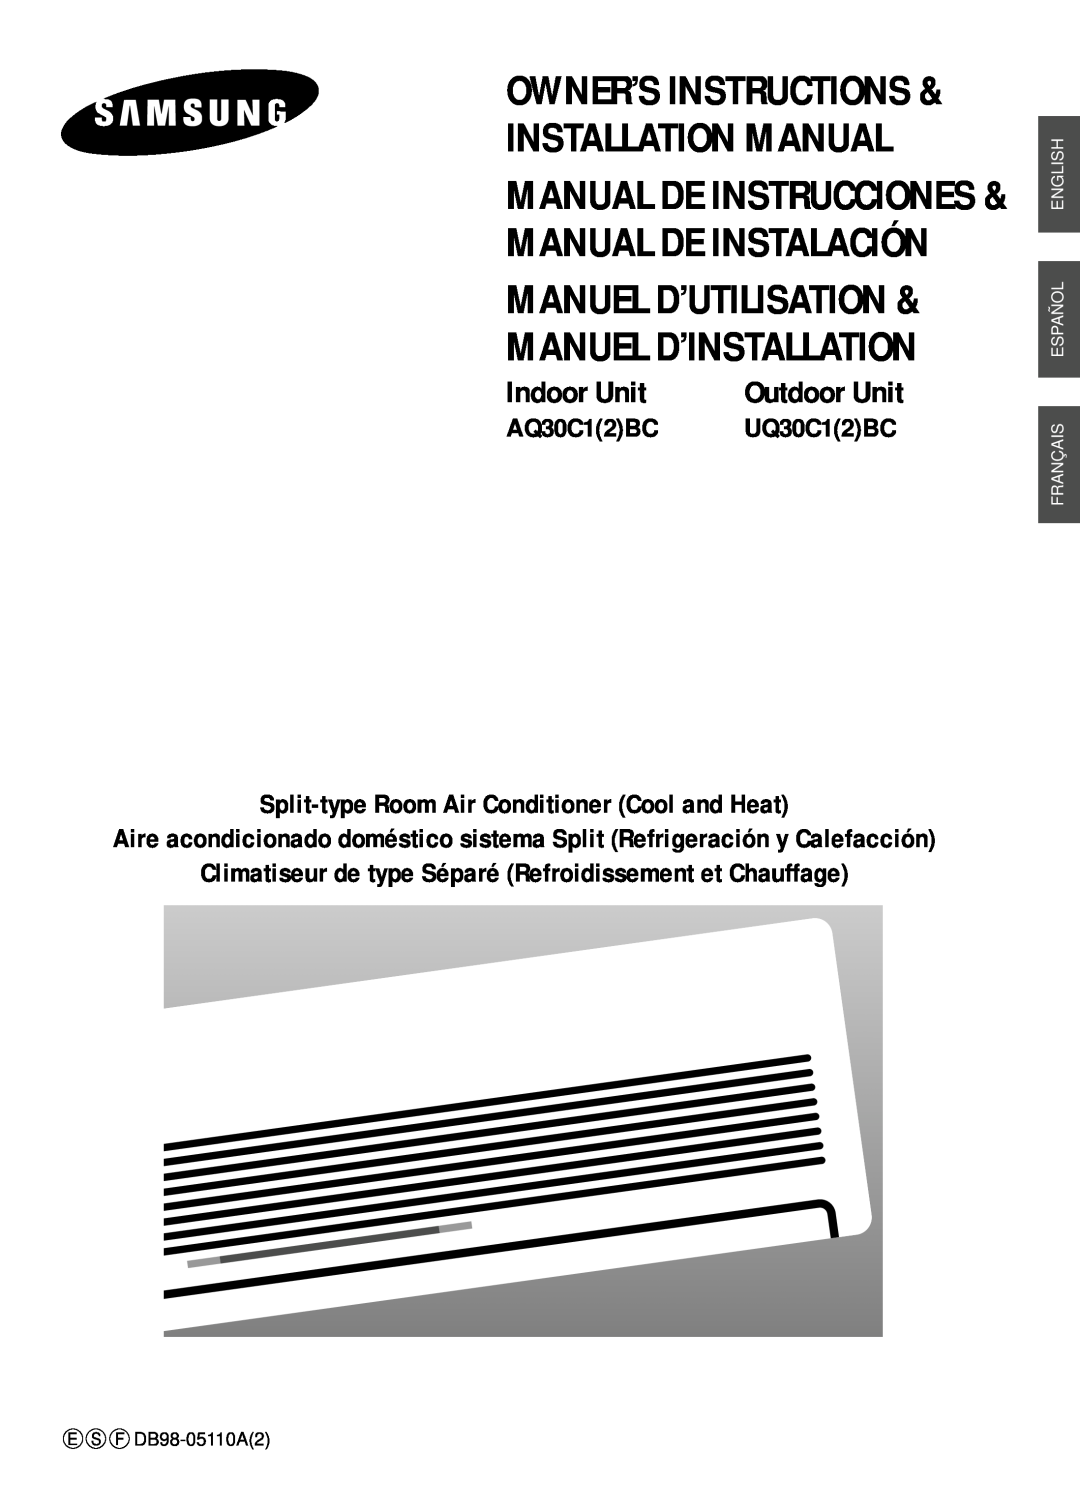 Samsung AQ30C1(2)BC installation manual AQ30C12BC, Split-typeRoom Air Conditioner Cool and Heat, Outdoor Unit, Indoor Unit 